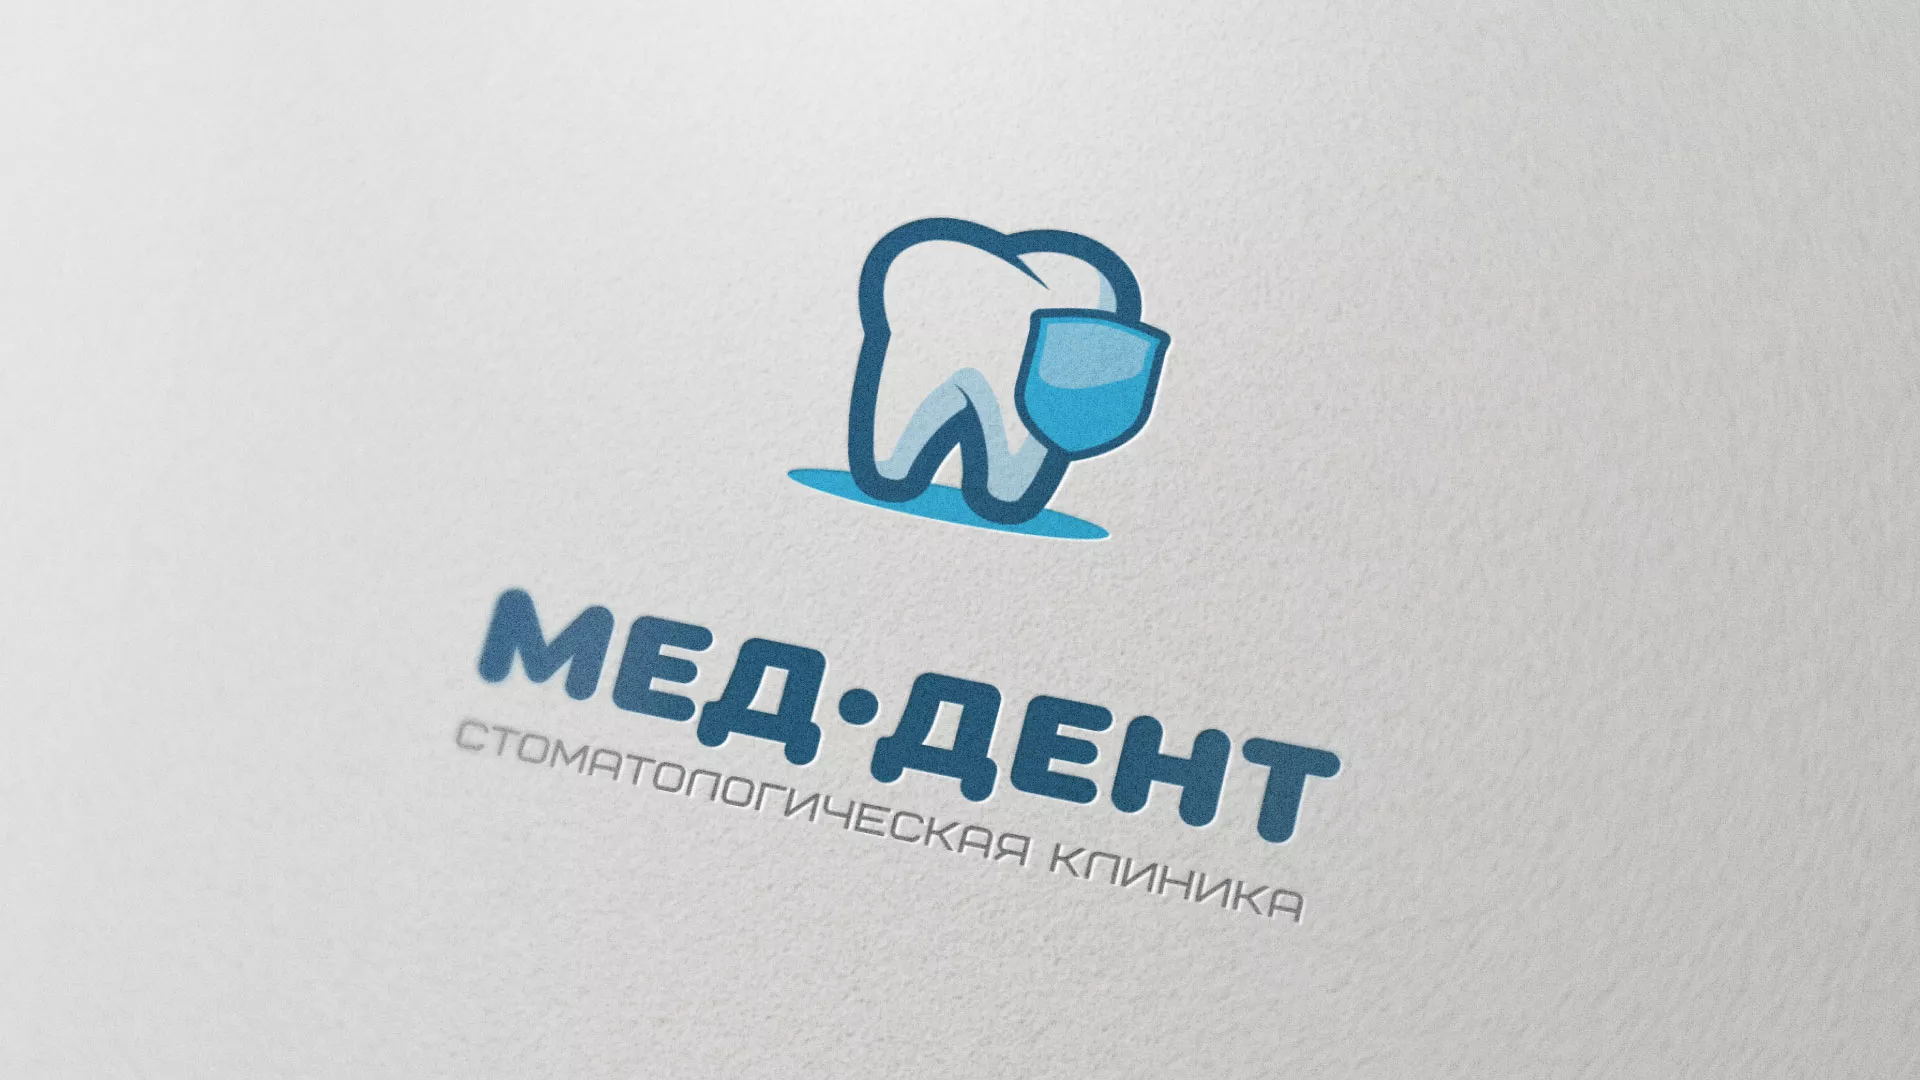 Разработка логотипа стоматологической клиники «МЕД-ДЕНТ» в Челябинске